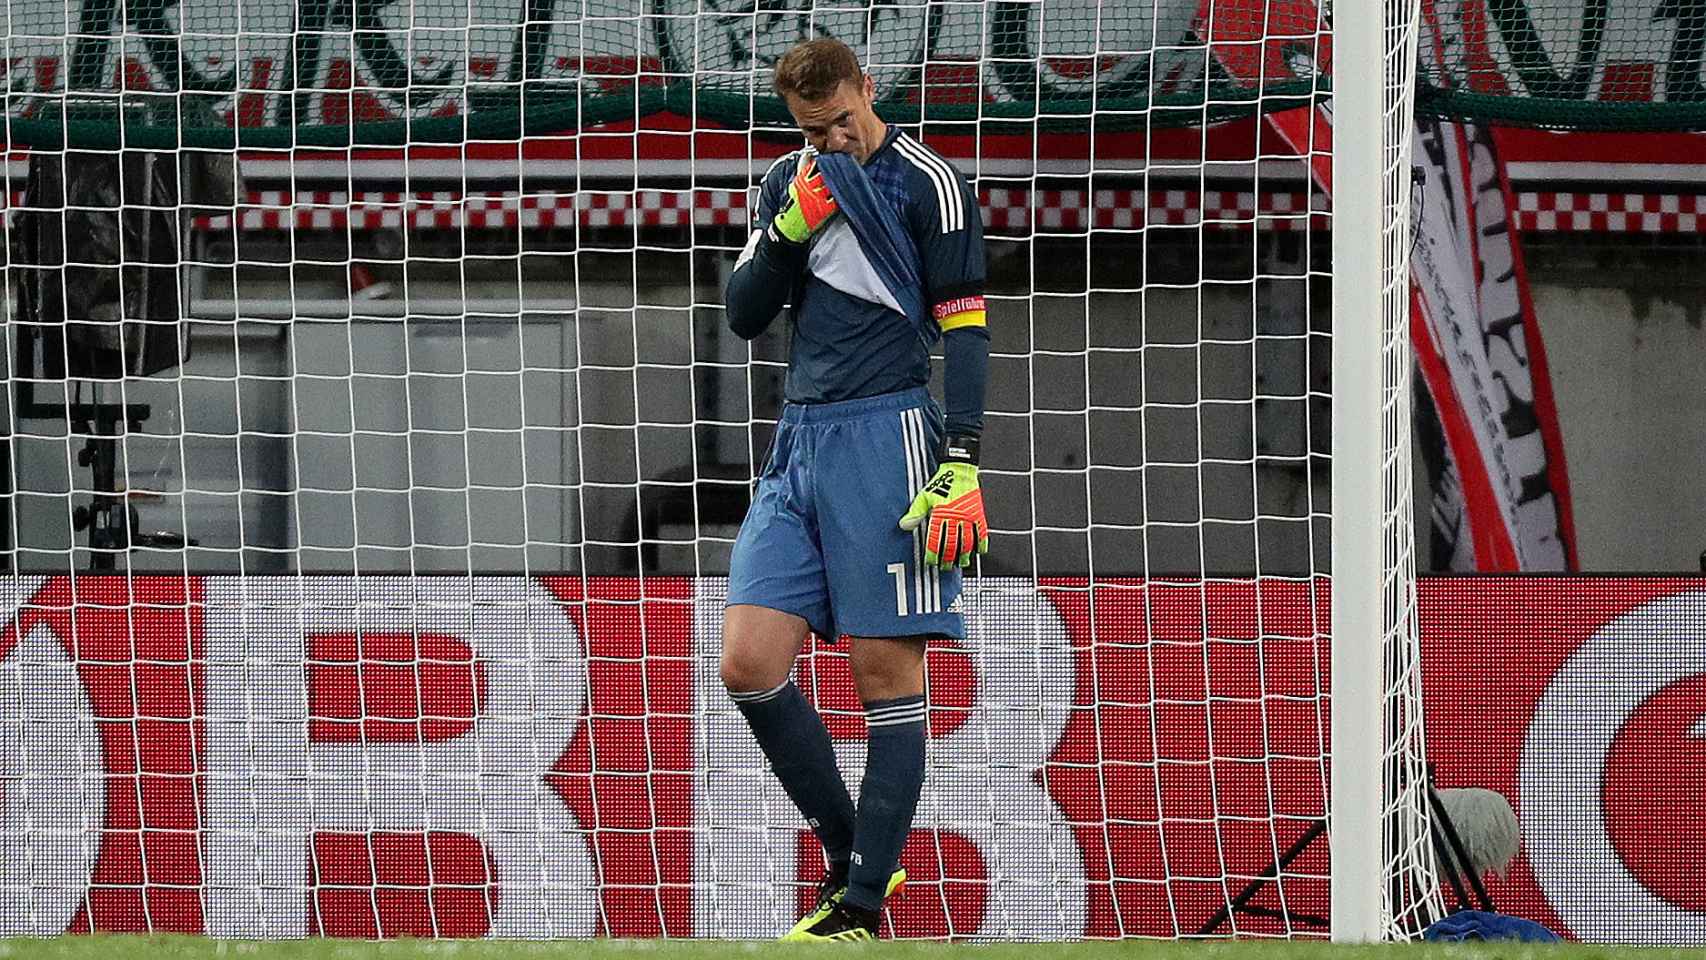 Neuer se lamenta tras el primer gol austríaco.